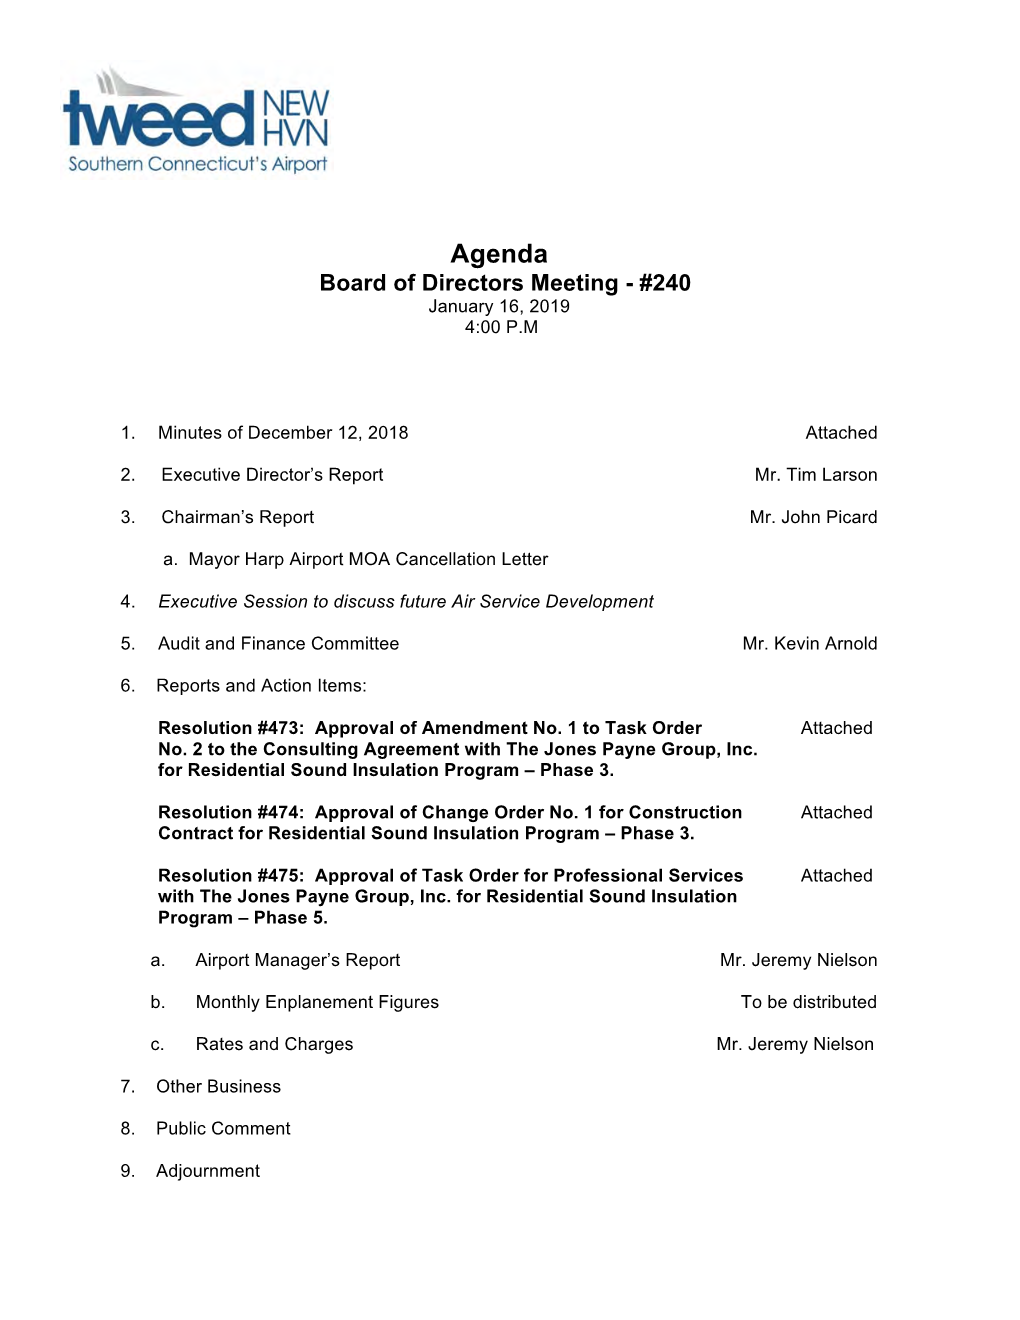 Agenda Board of Directors Meeting - #240 January 16, 2019 4:00 P.M